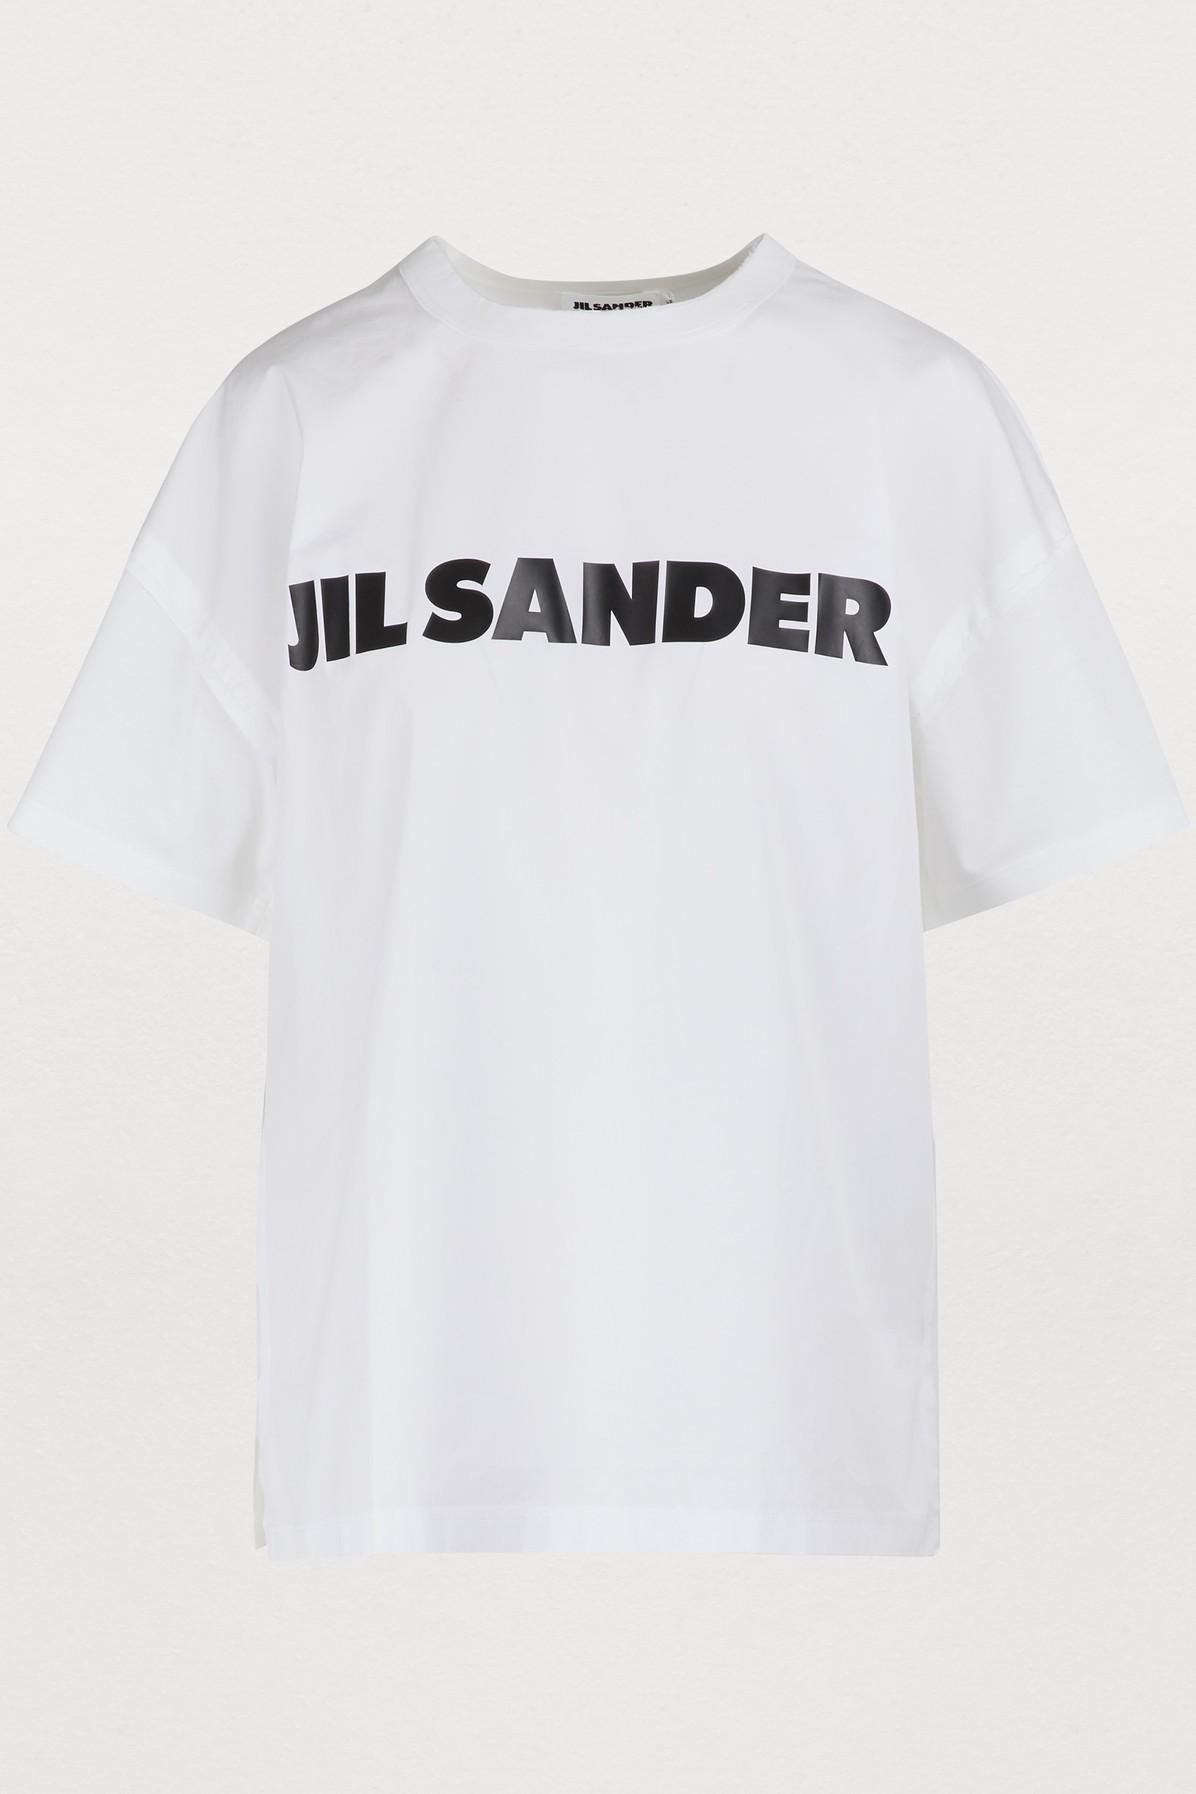 Jil Sander Logo T-shirt in White - Lyst